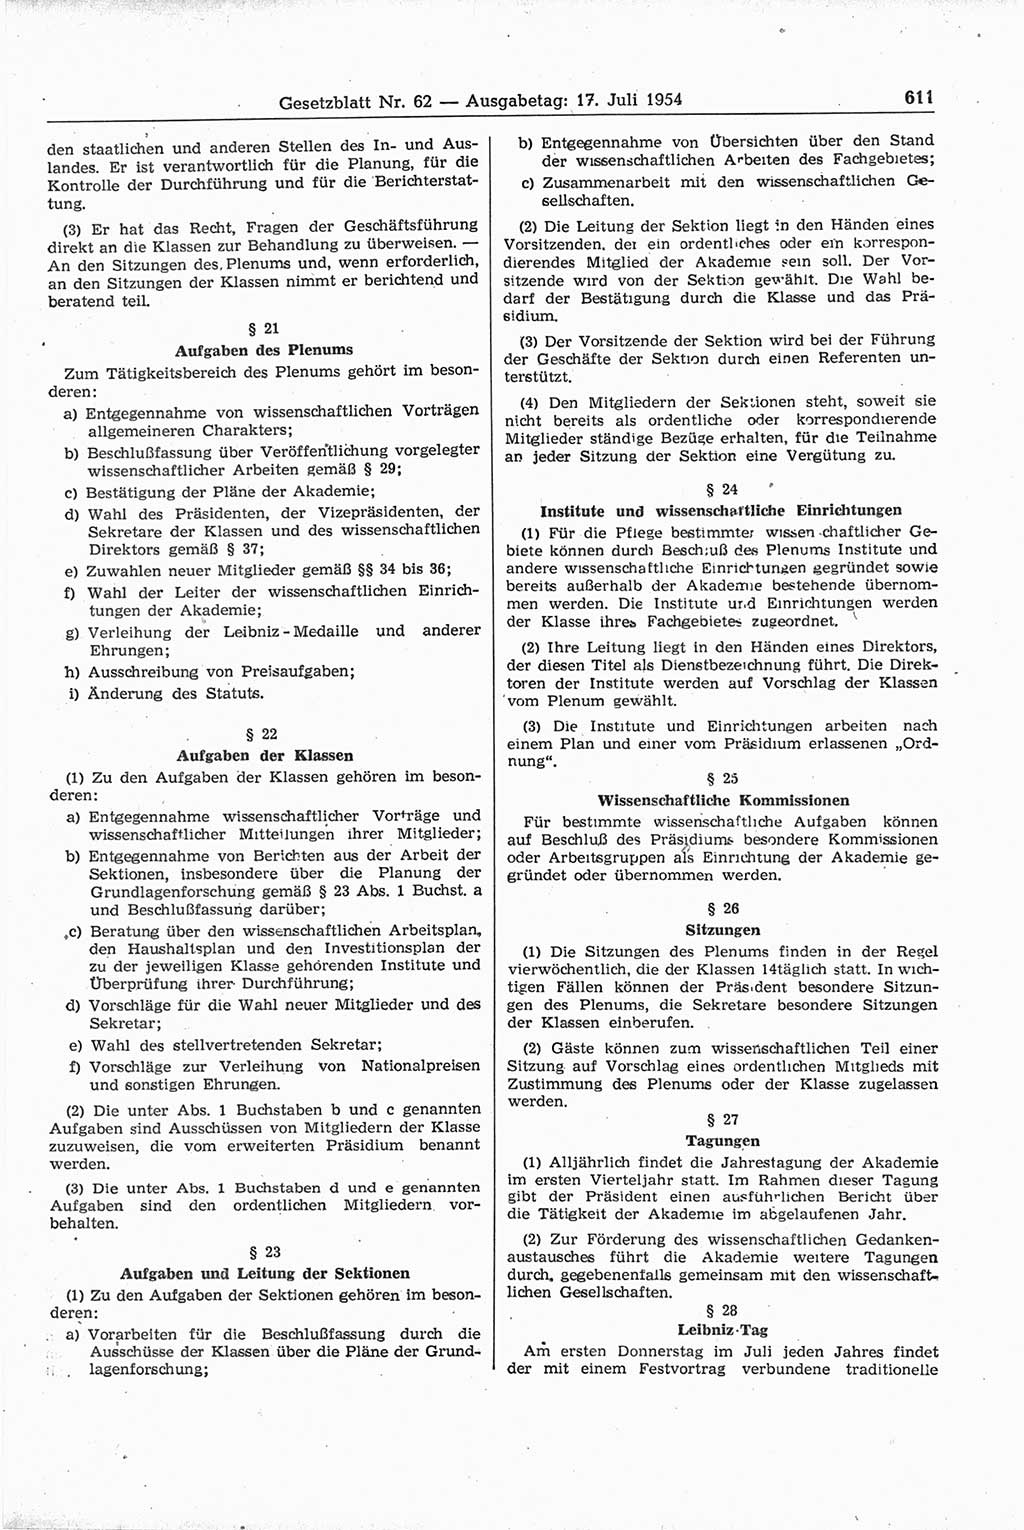 Gesetzblatt (GBl.) der Deutschen Demokratischen Republik (DDR) 1954, Seite 611 (GBl. DDR 1954, S. 611)